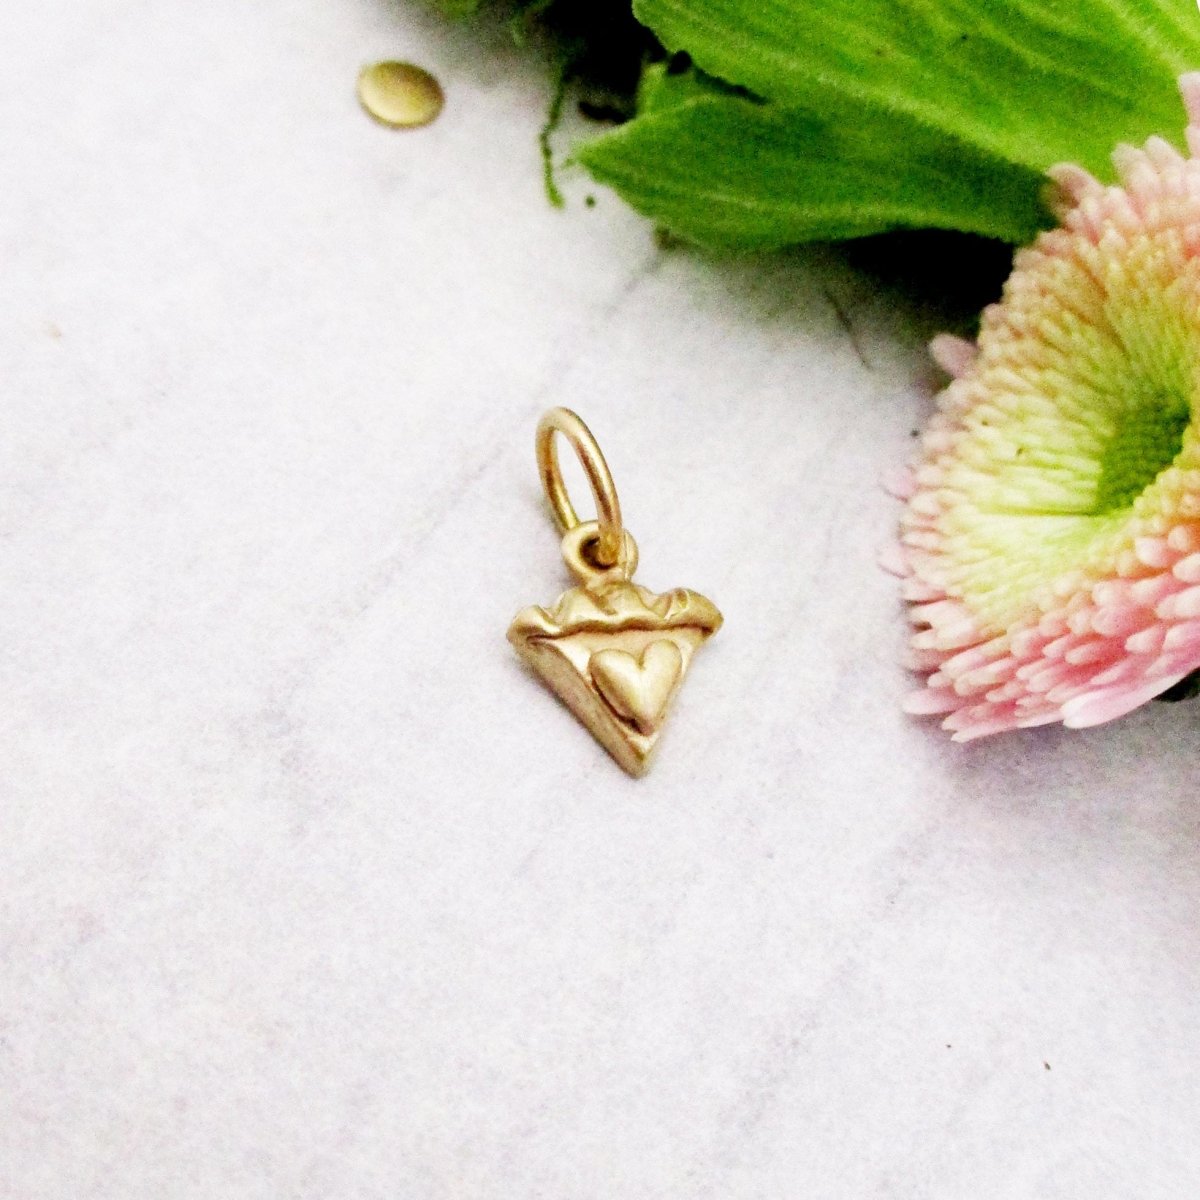 14 Karat Gold Slice of Sweetie Pie Charm, My Little Sweetie Pie Pendant - Luxe Design Jewellery